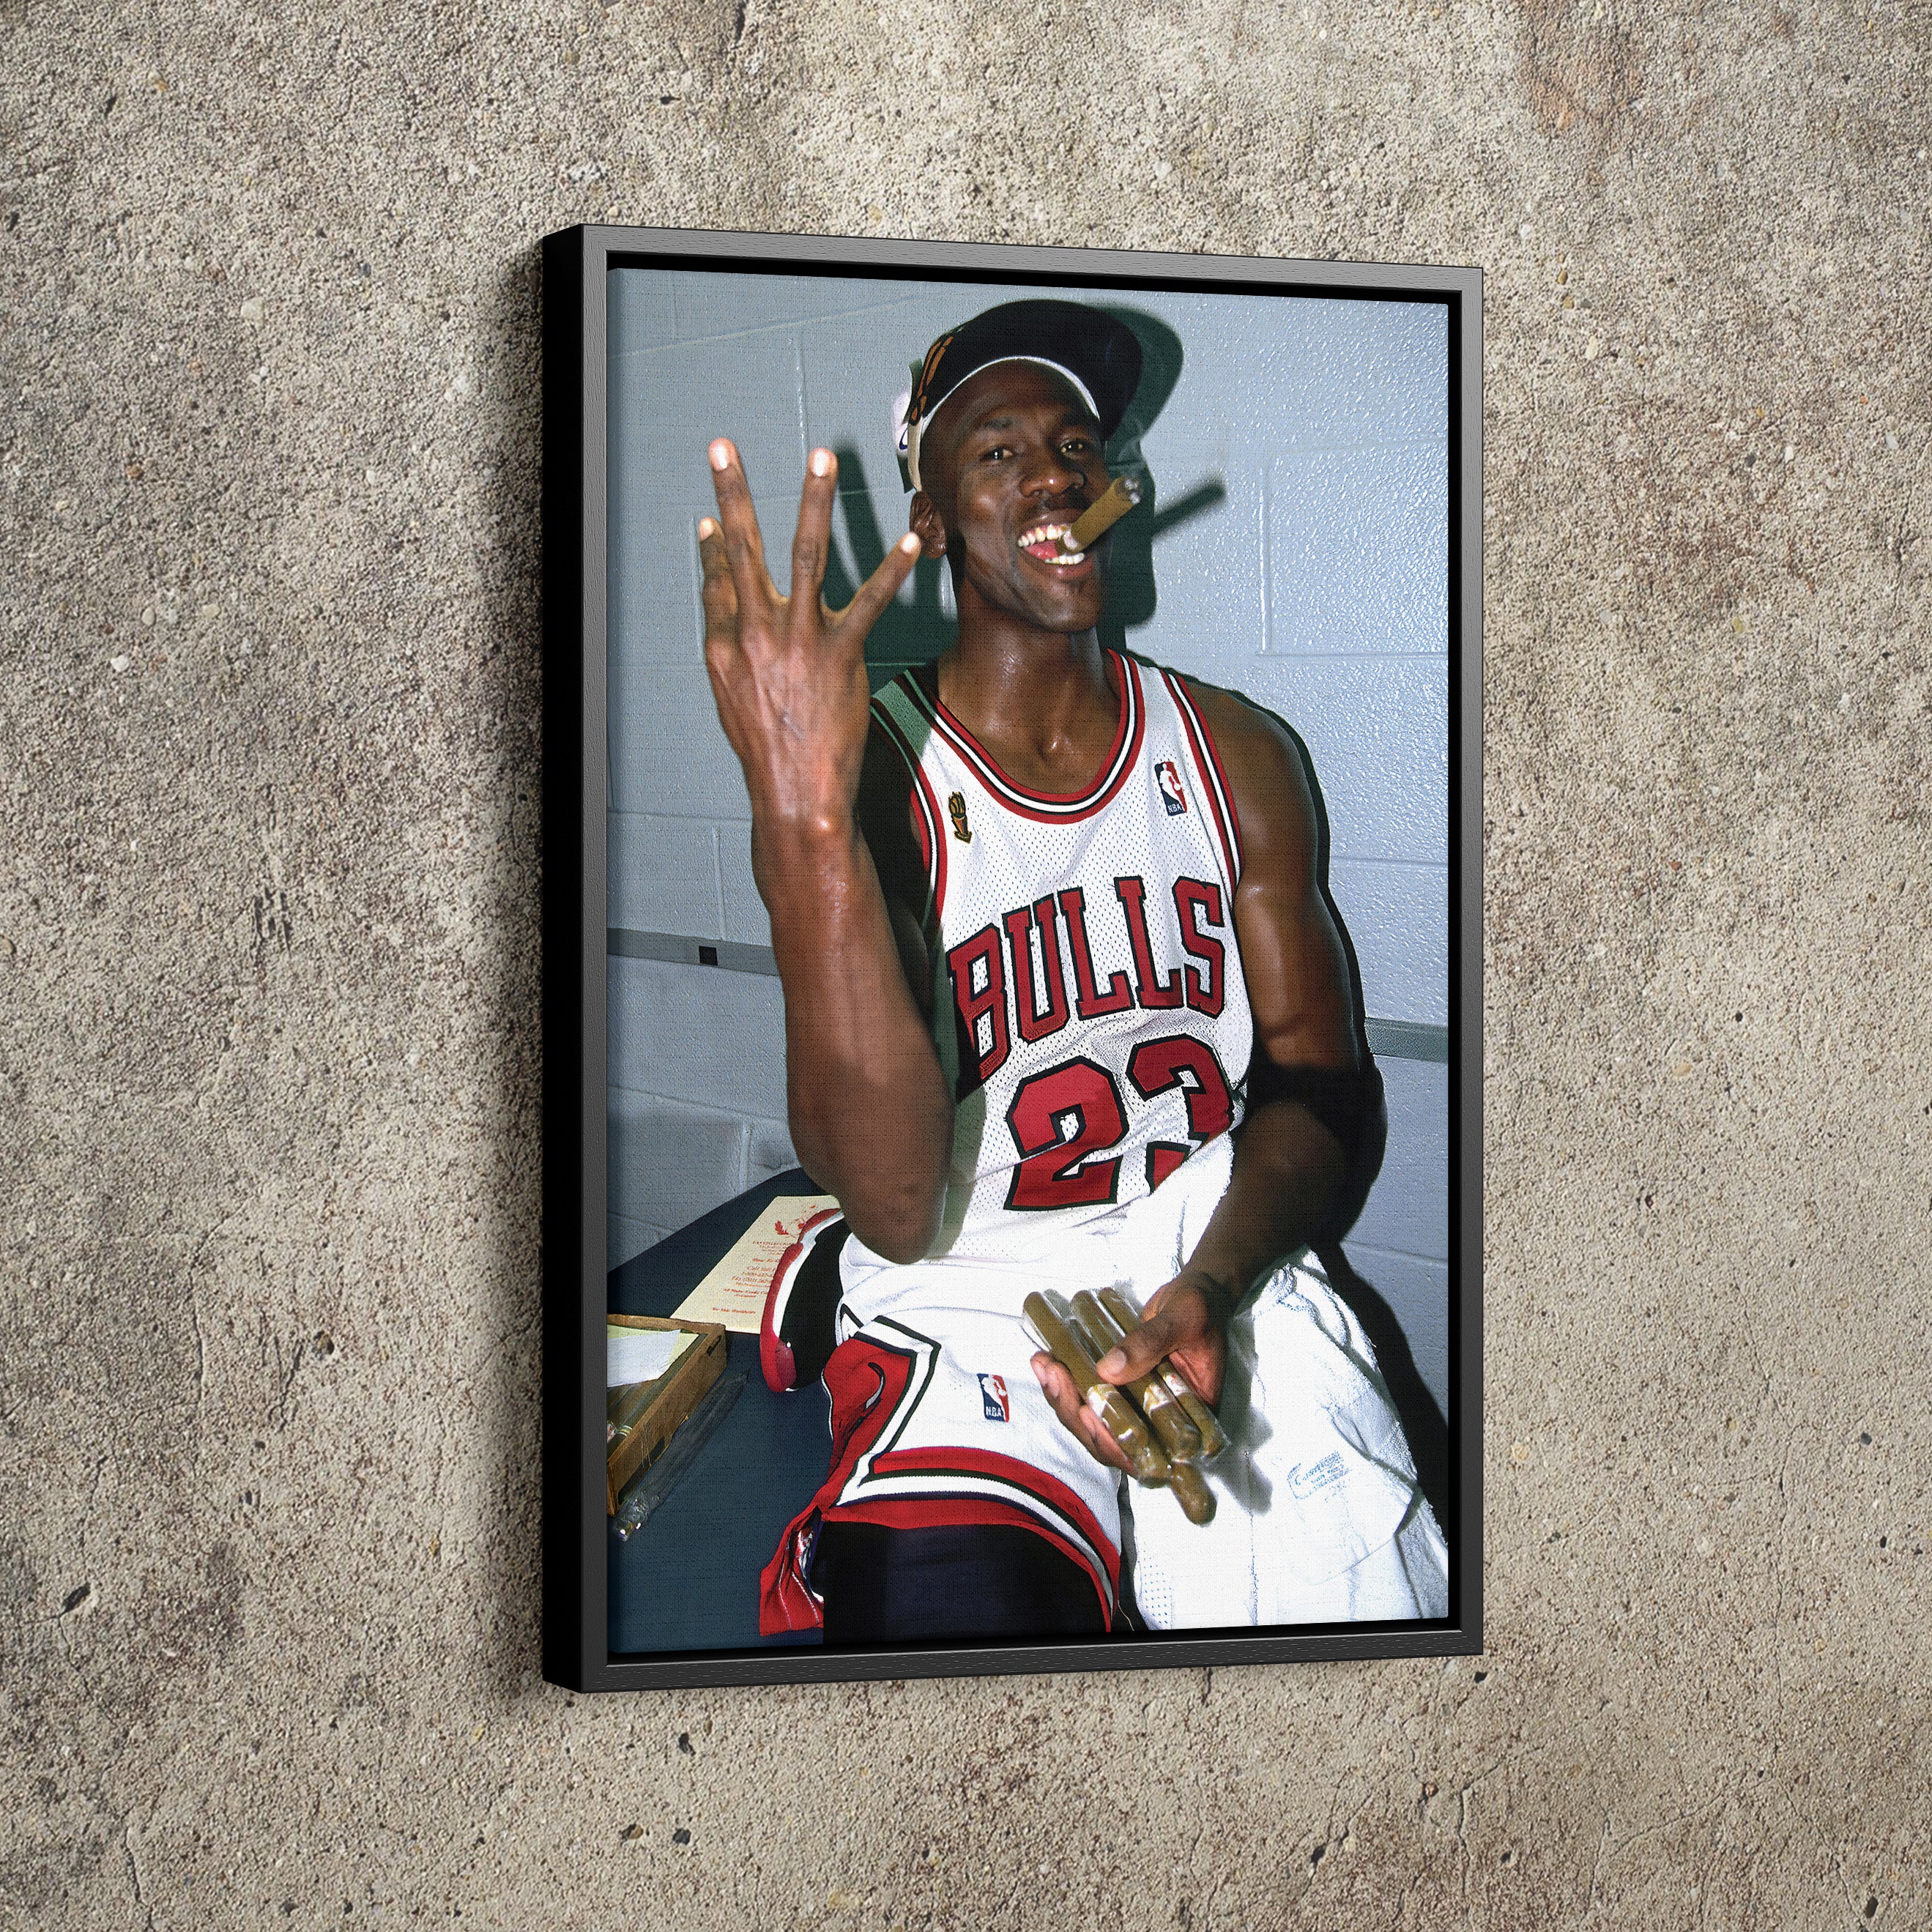 Michael Jordan Posters for Sale